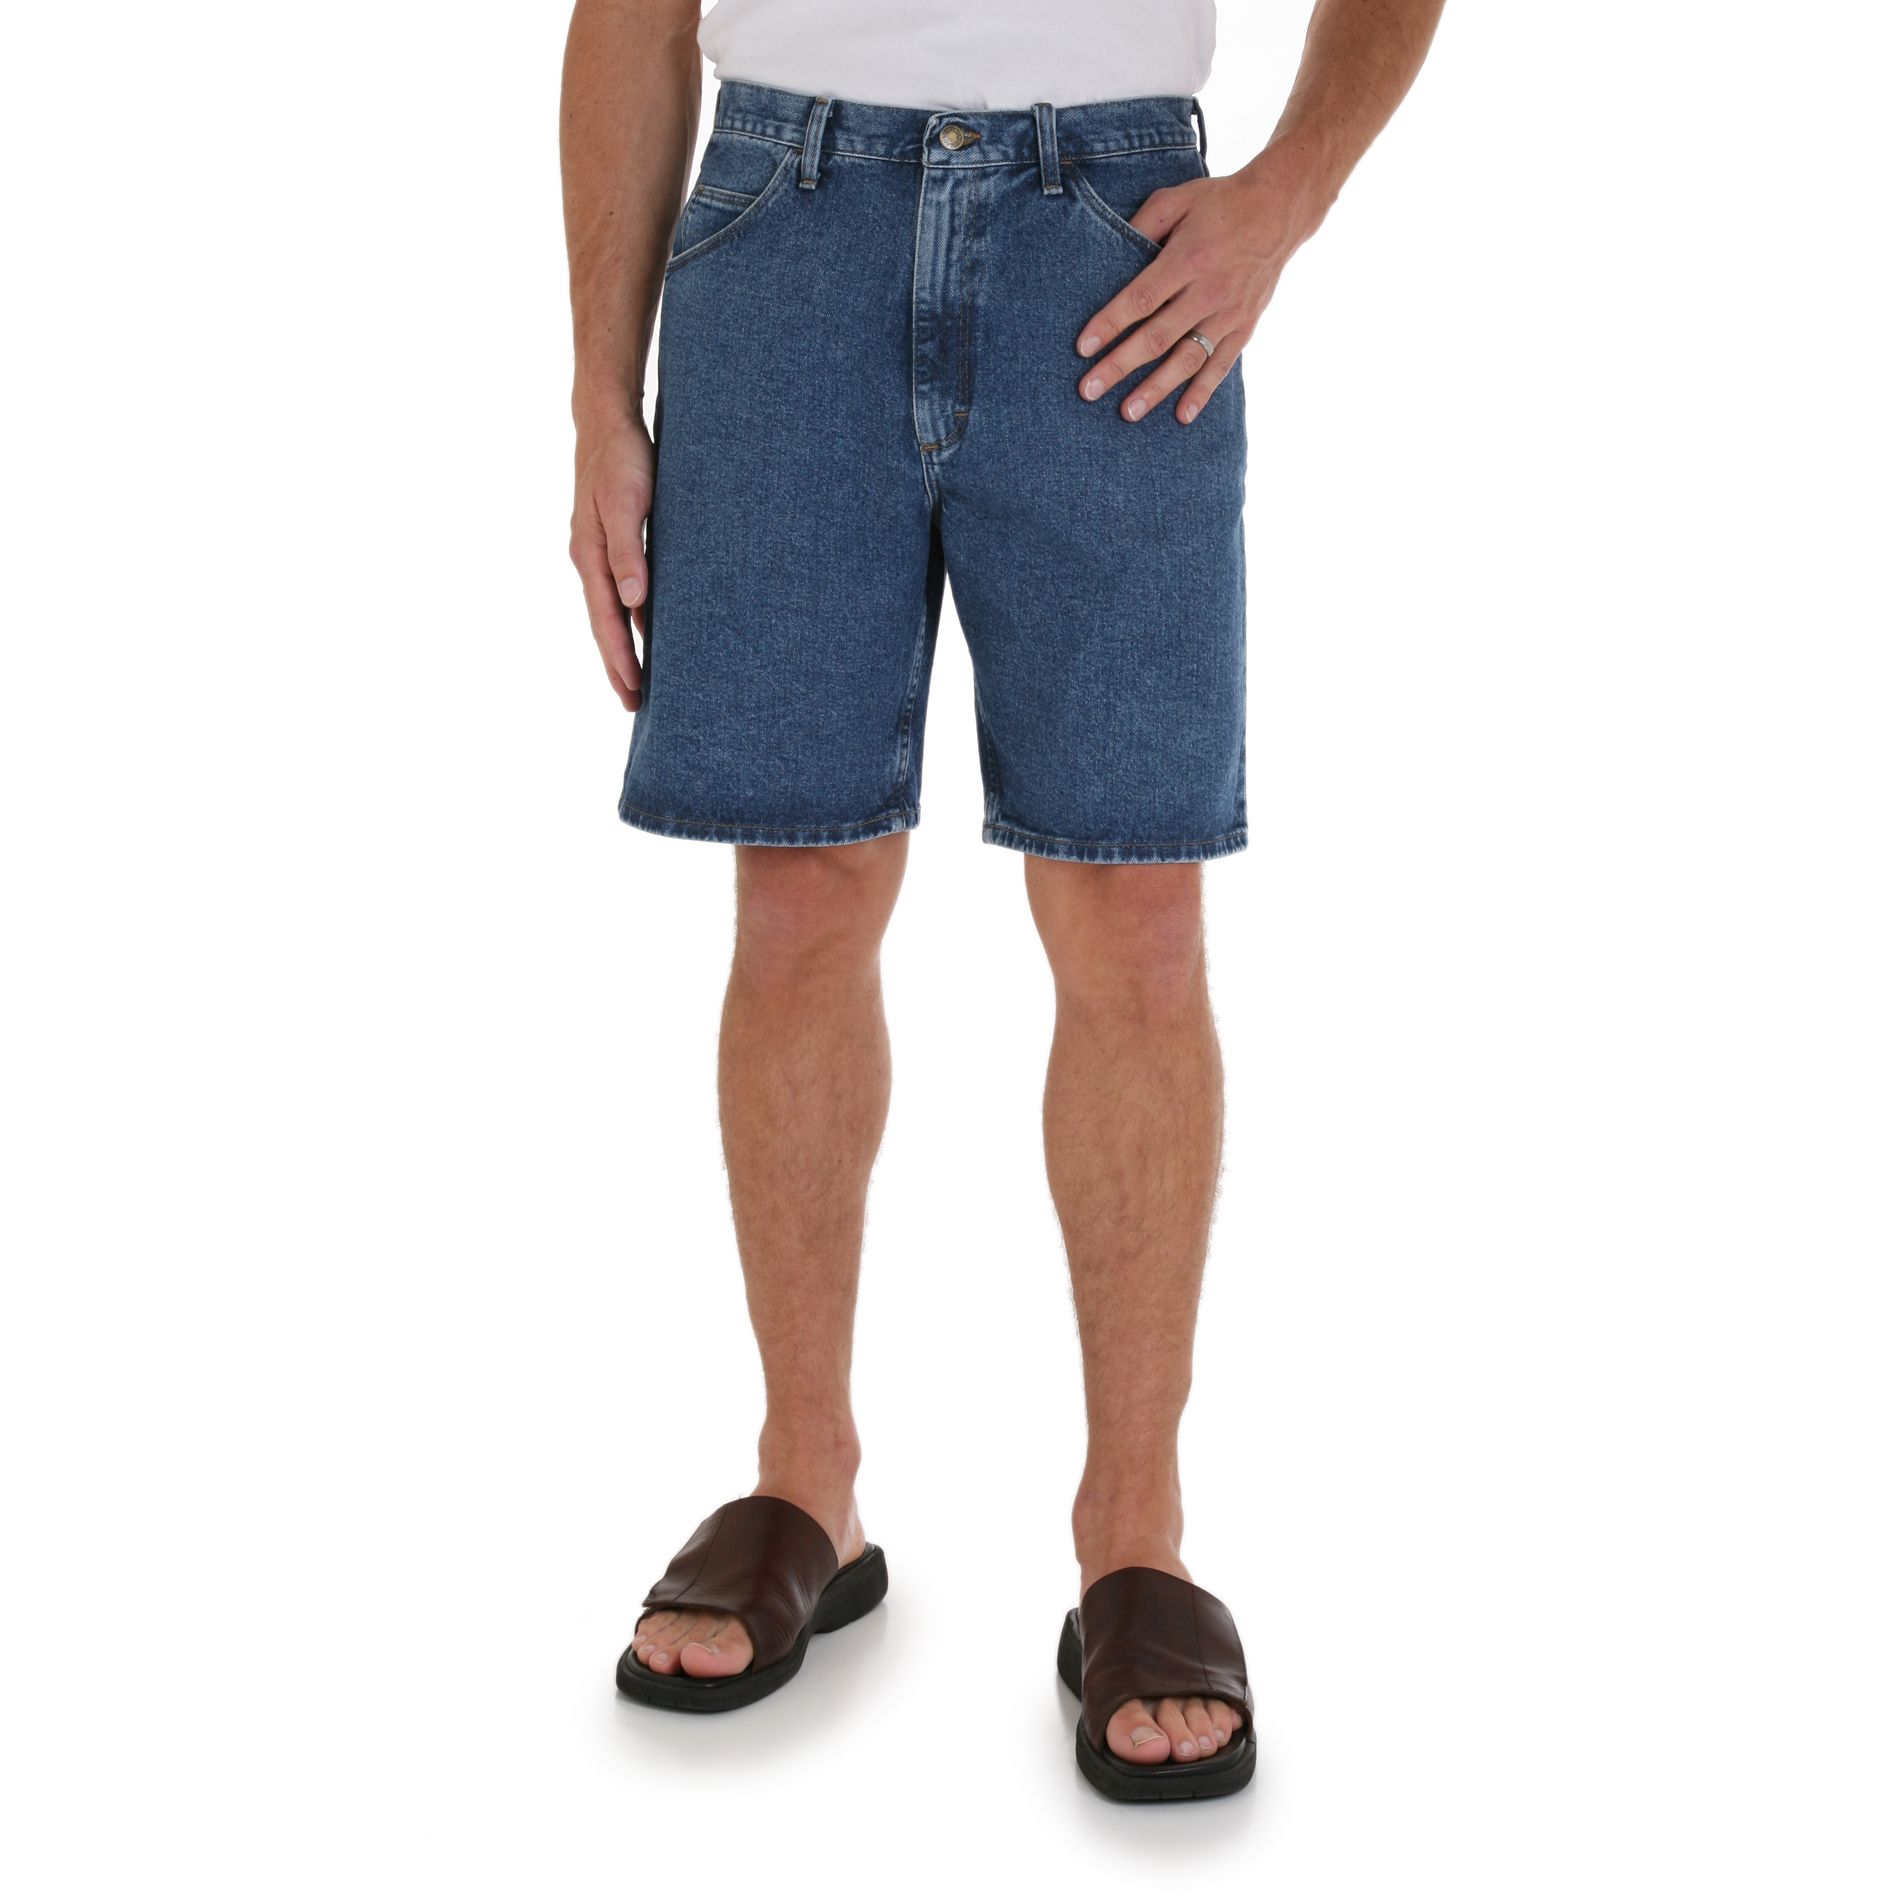 Wrangler Men’s Shorts Relaxed Fit 5 Pocket Denim